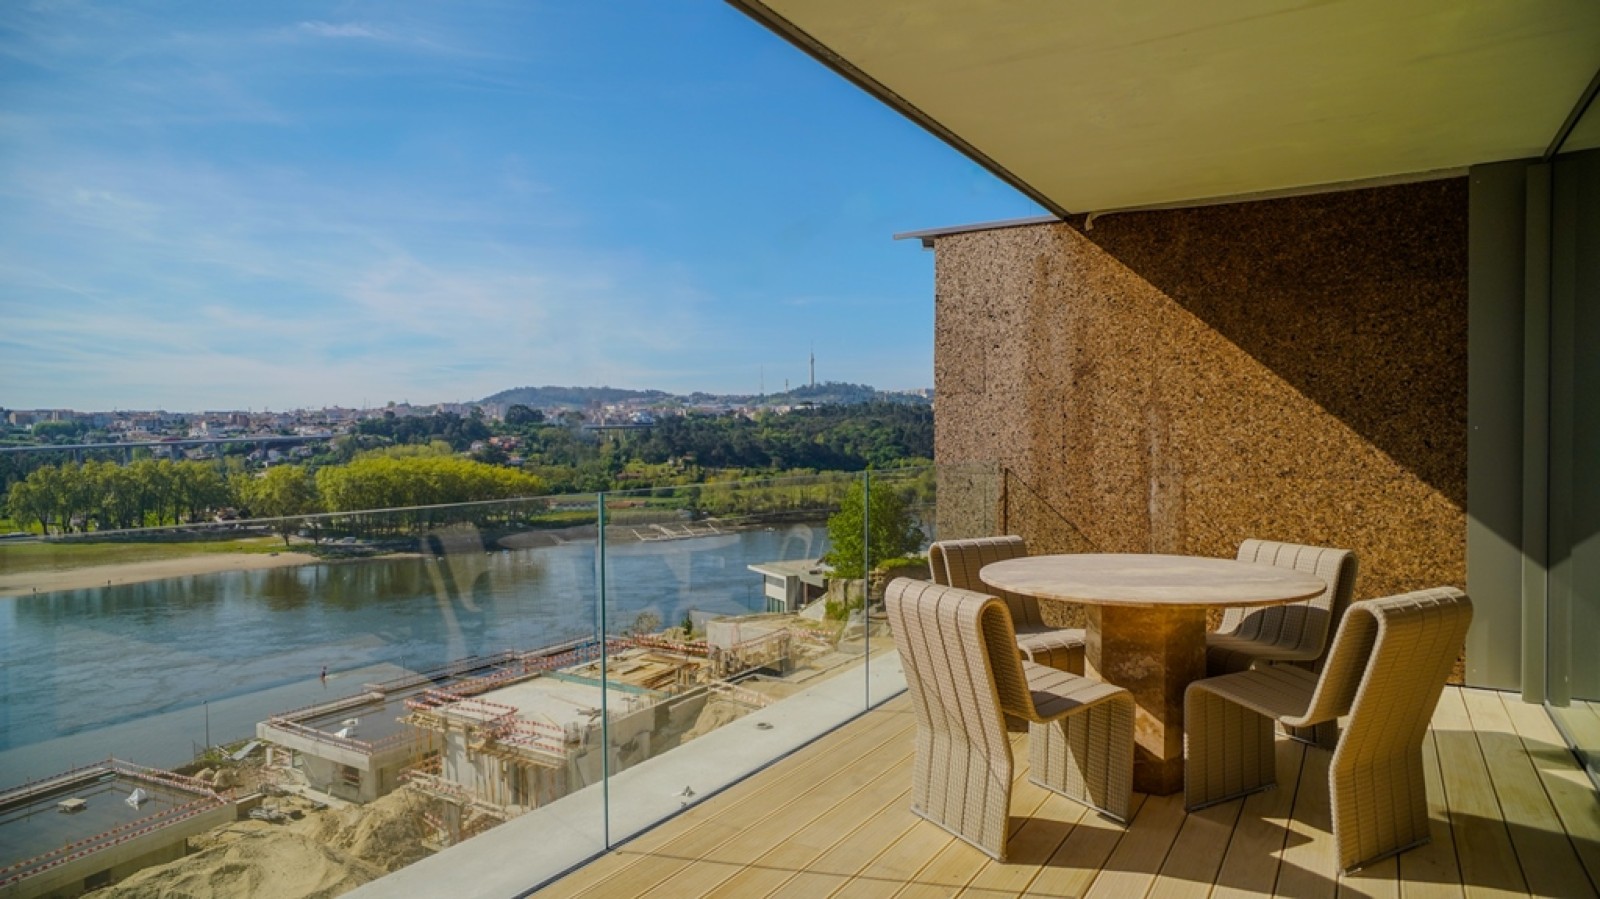 Apartamento T3+1 Duplex com vista de rio, para venda, Porto, Portugal_259555